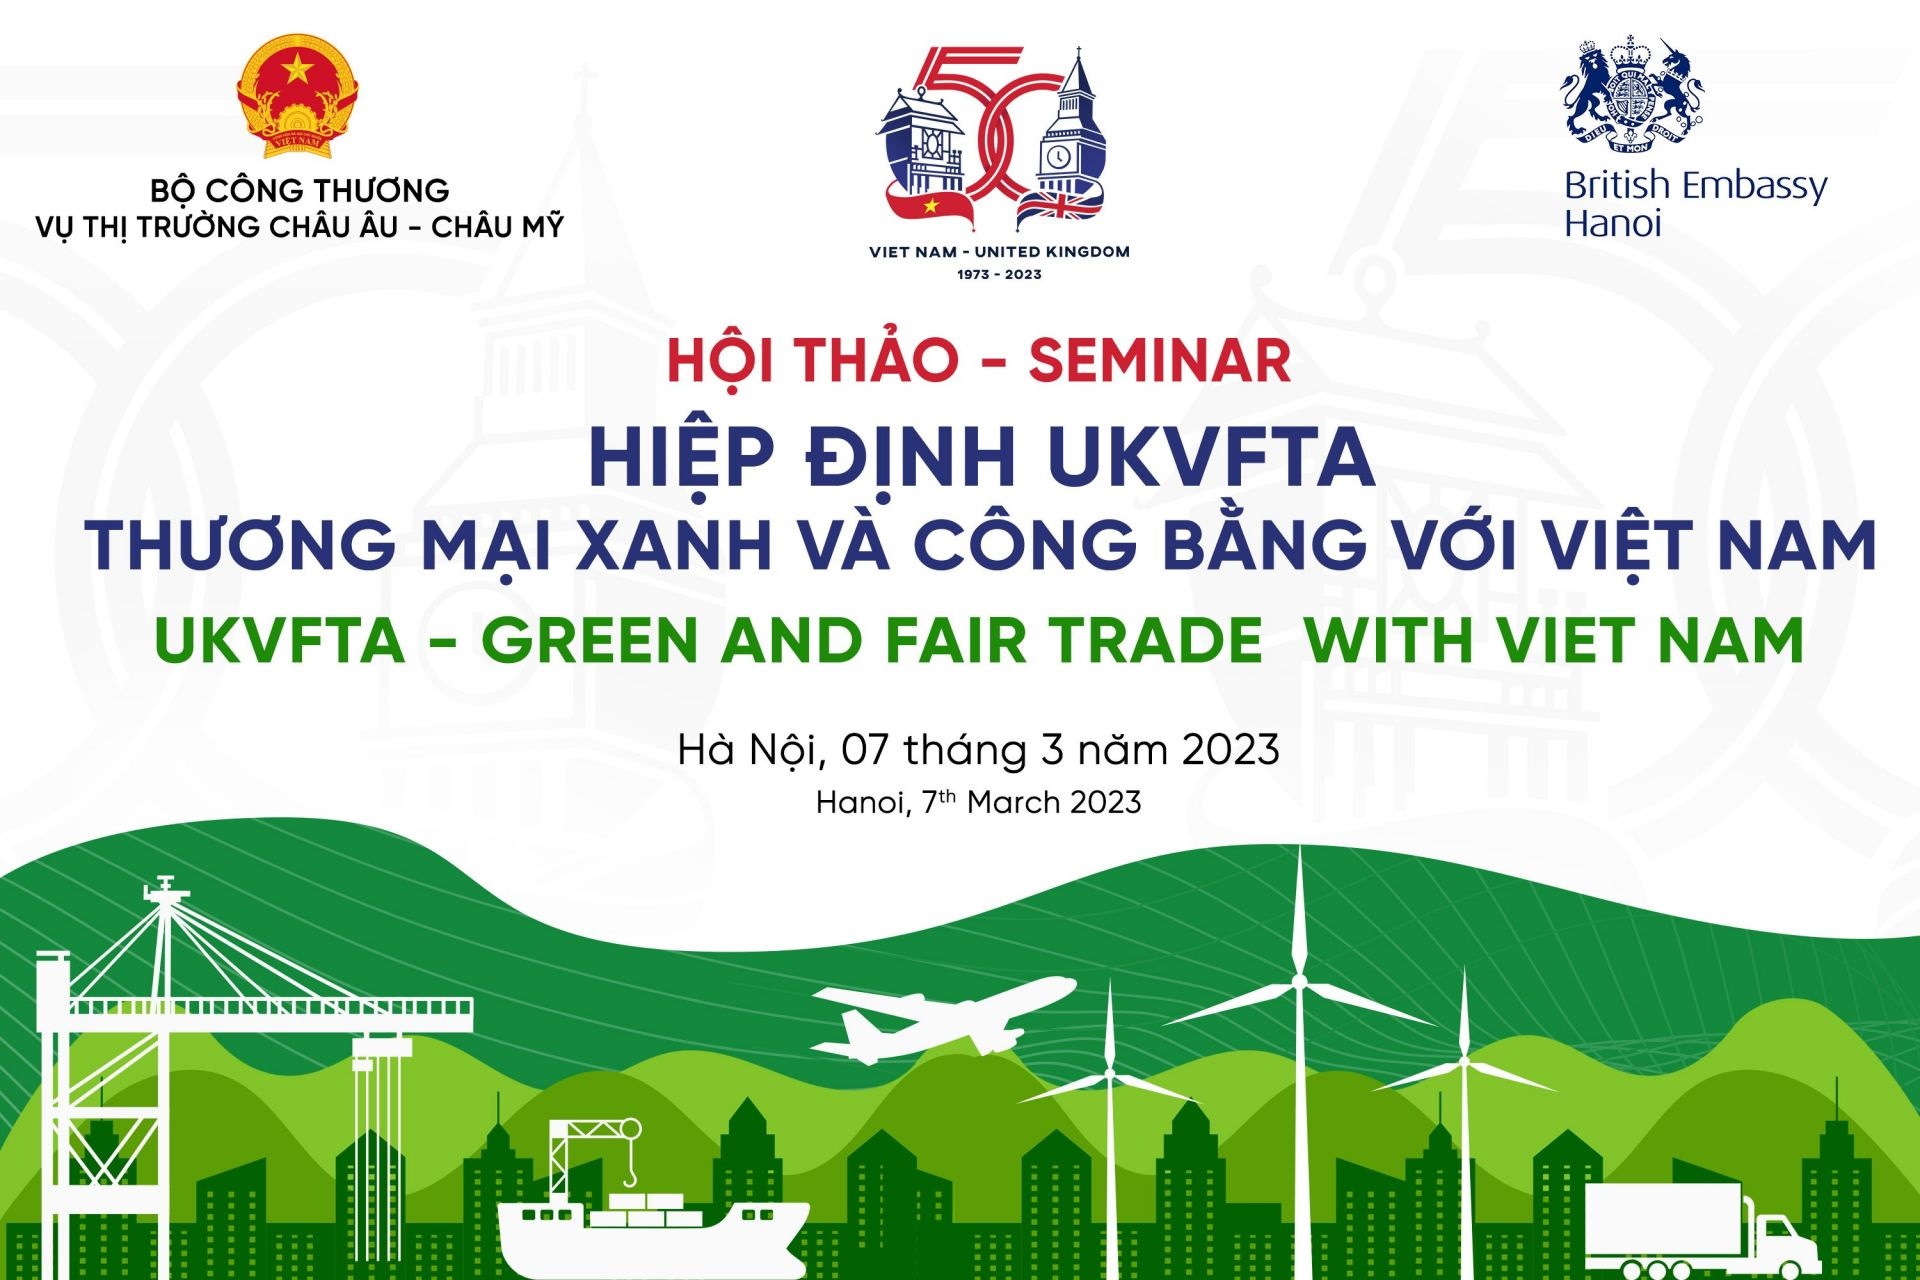 Sắp diễn ra Hội thảo “Hiệp định UKVFTA - Thương mại xanh và công bằng với Việt Nam”